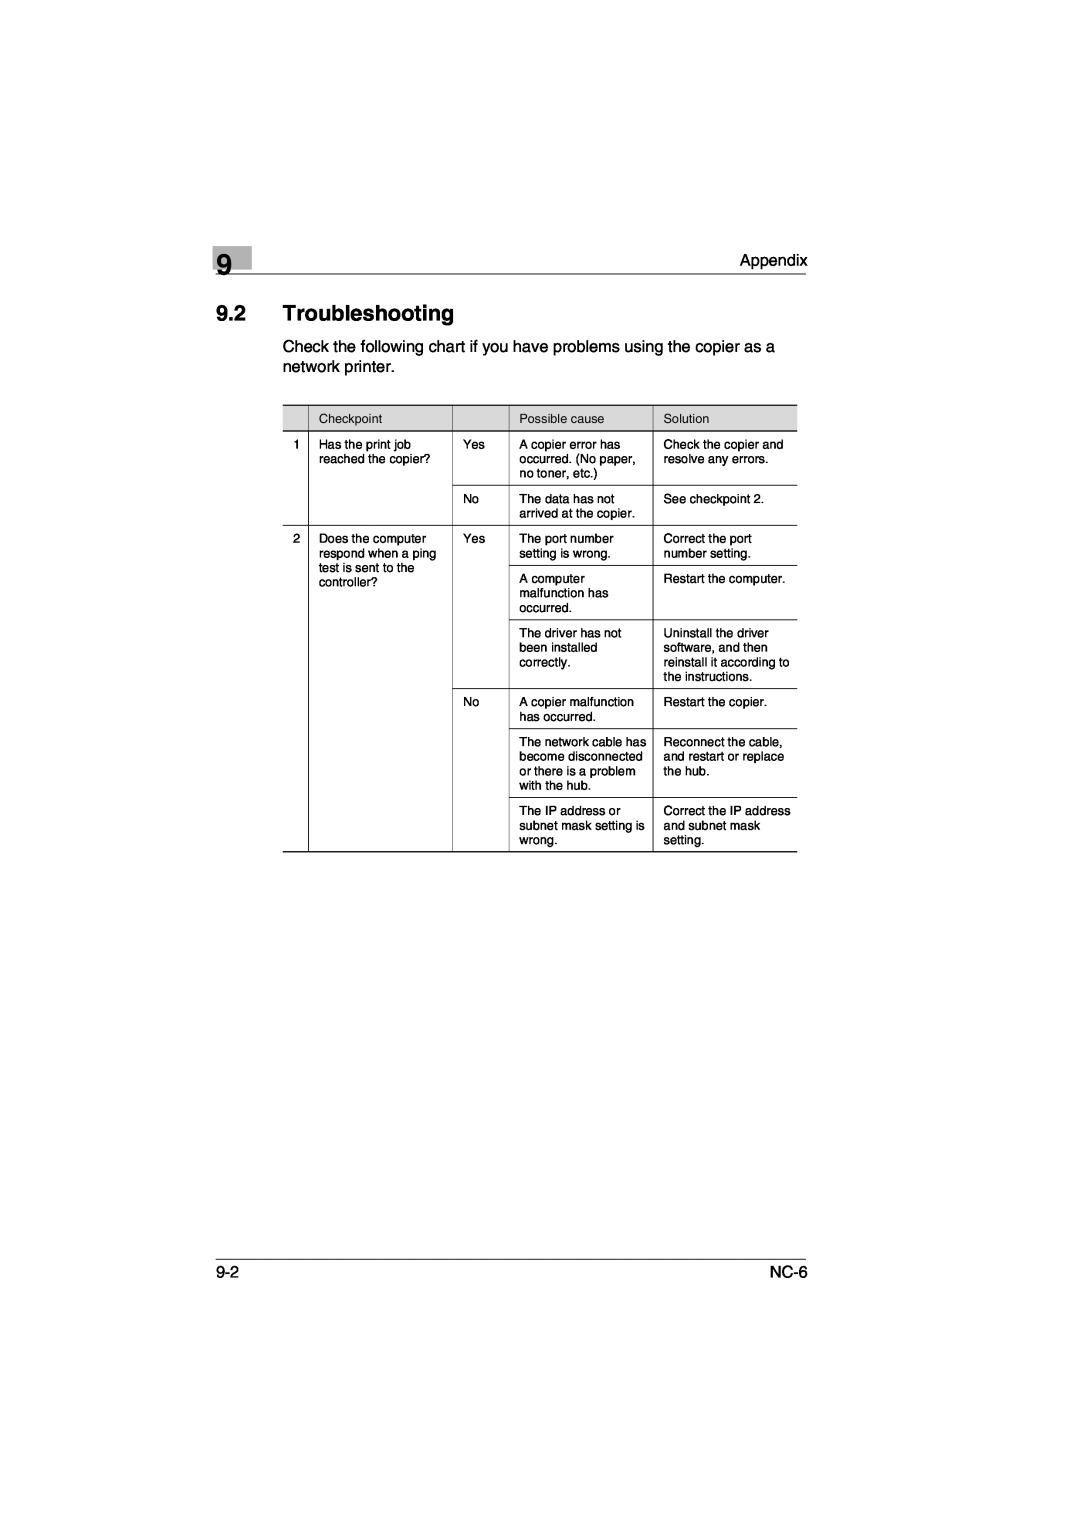 Konica Minolta NC-6 user manual Troubleshooting, Appendix 